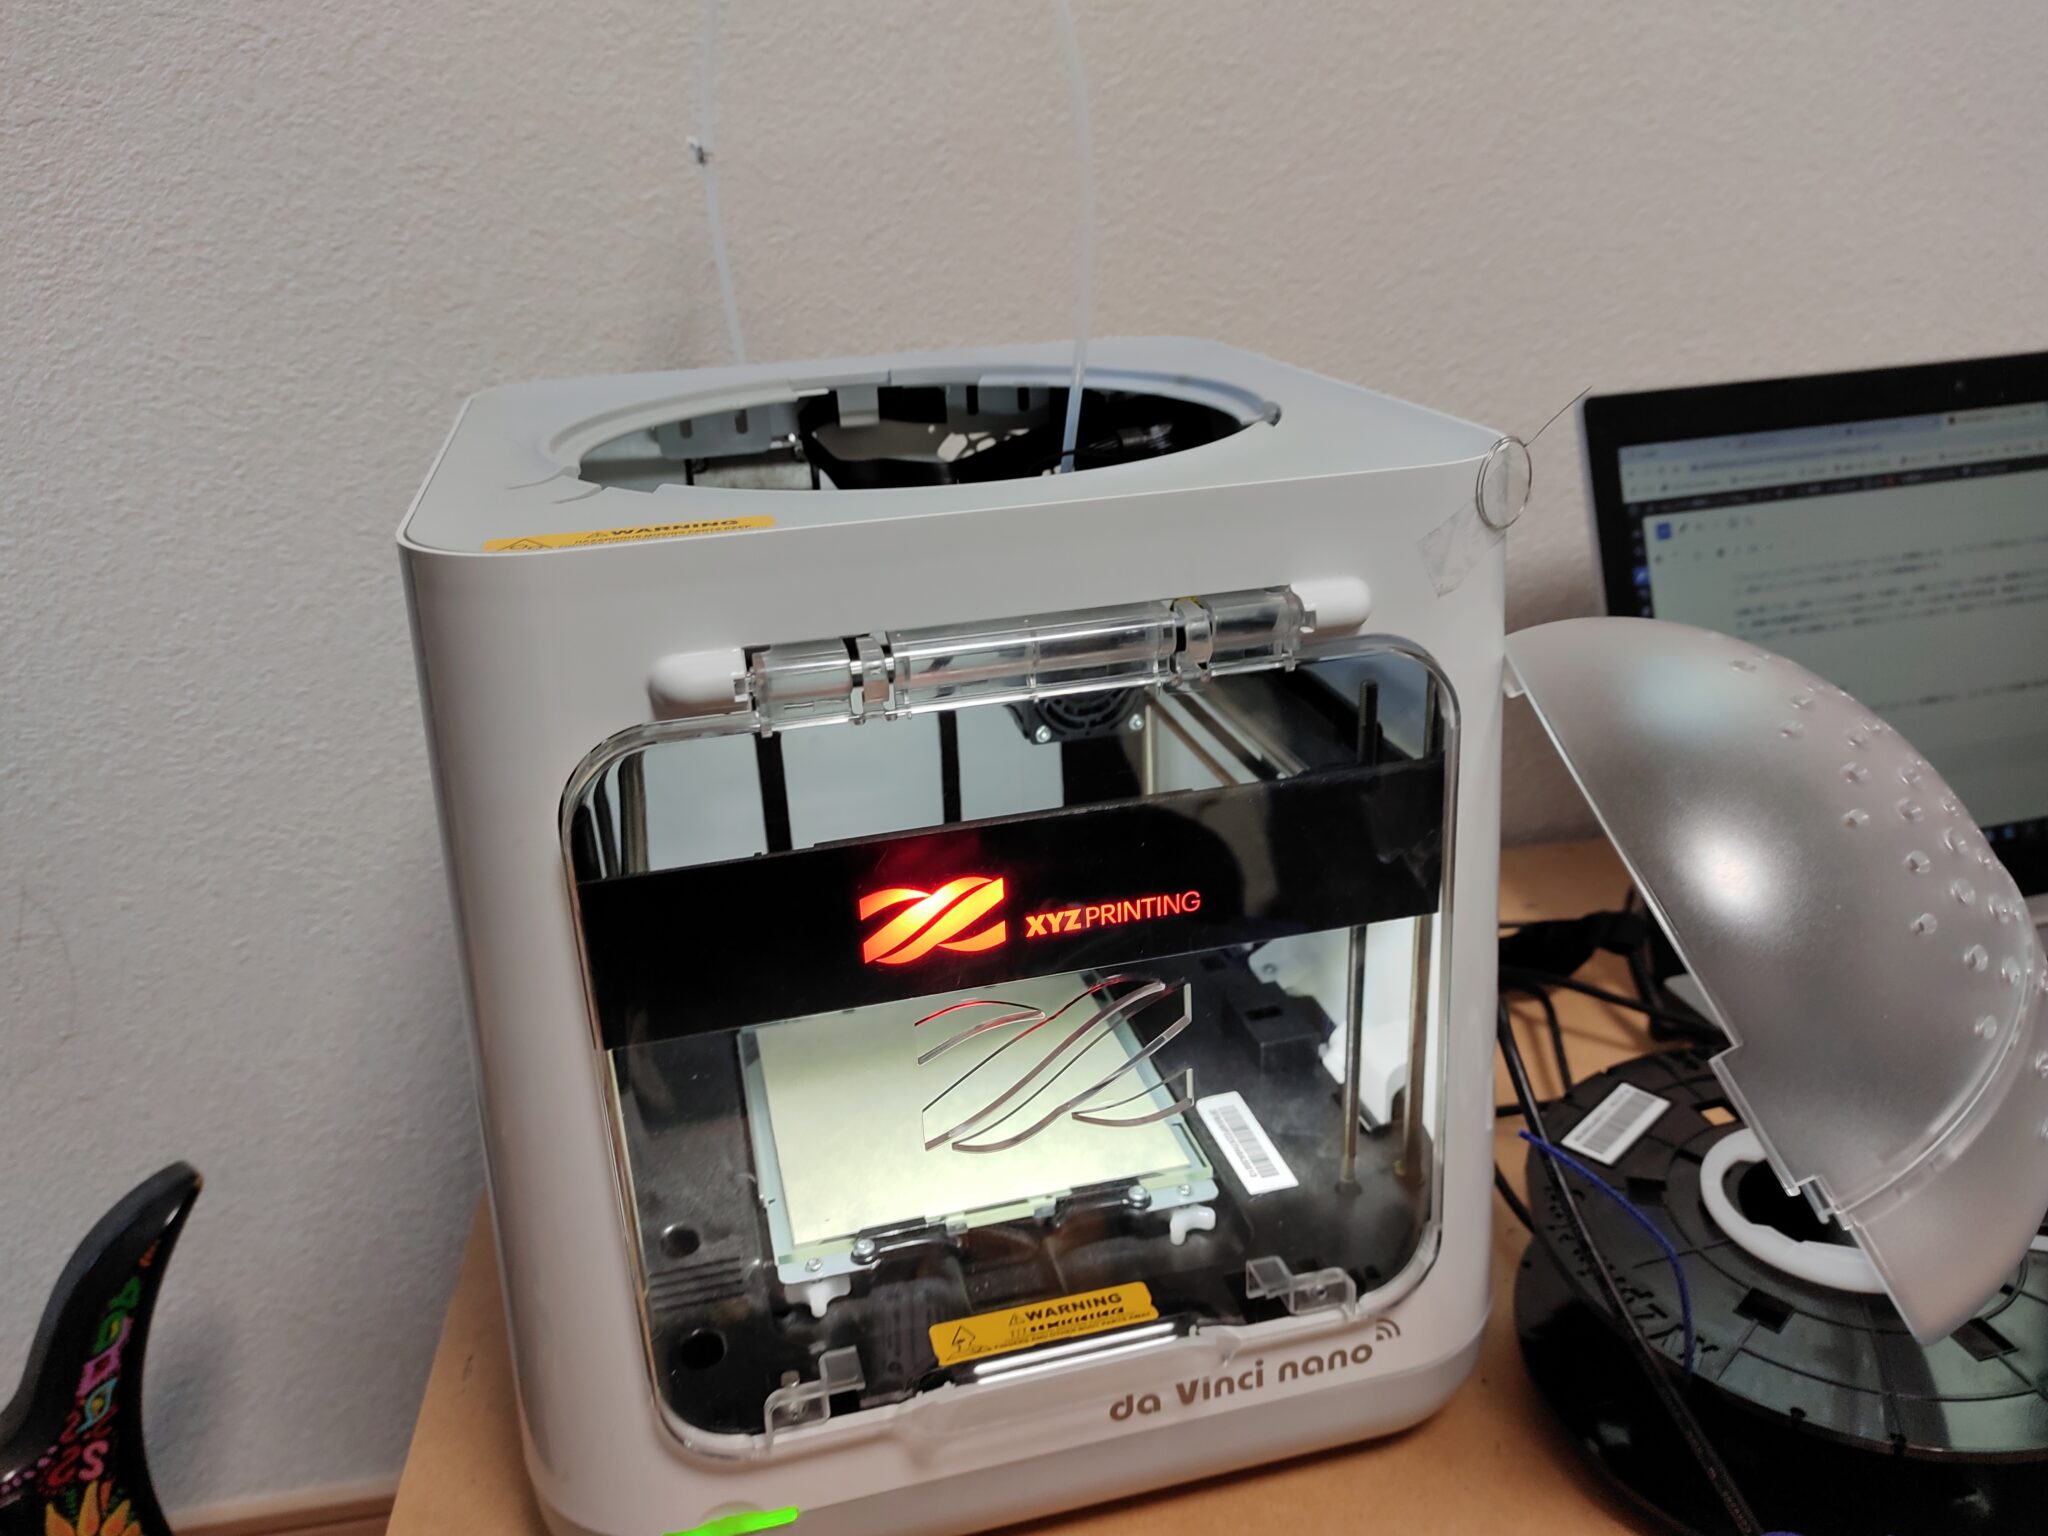 3Dプリンター「da Vinch nano w」を購入しました。設定方法、印刷、注意点についてのまとめ | ヘルニアクソ野郎エンジニアblog